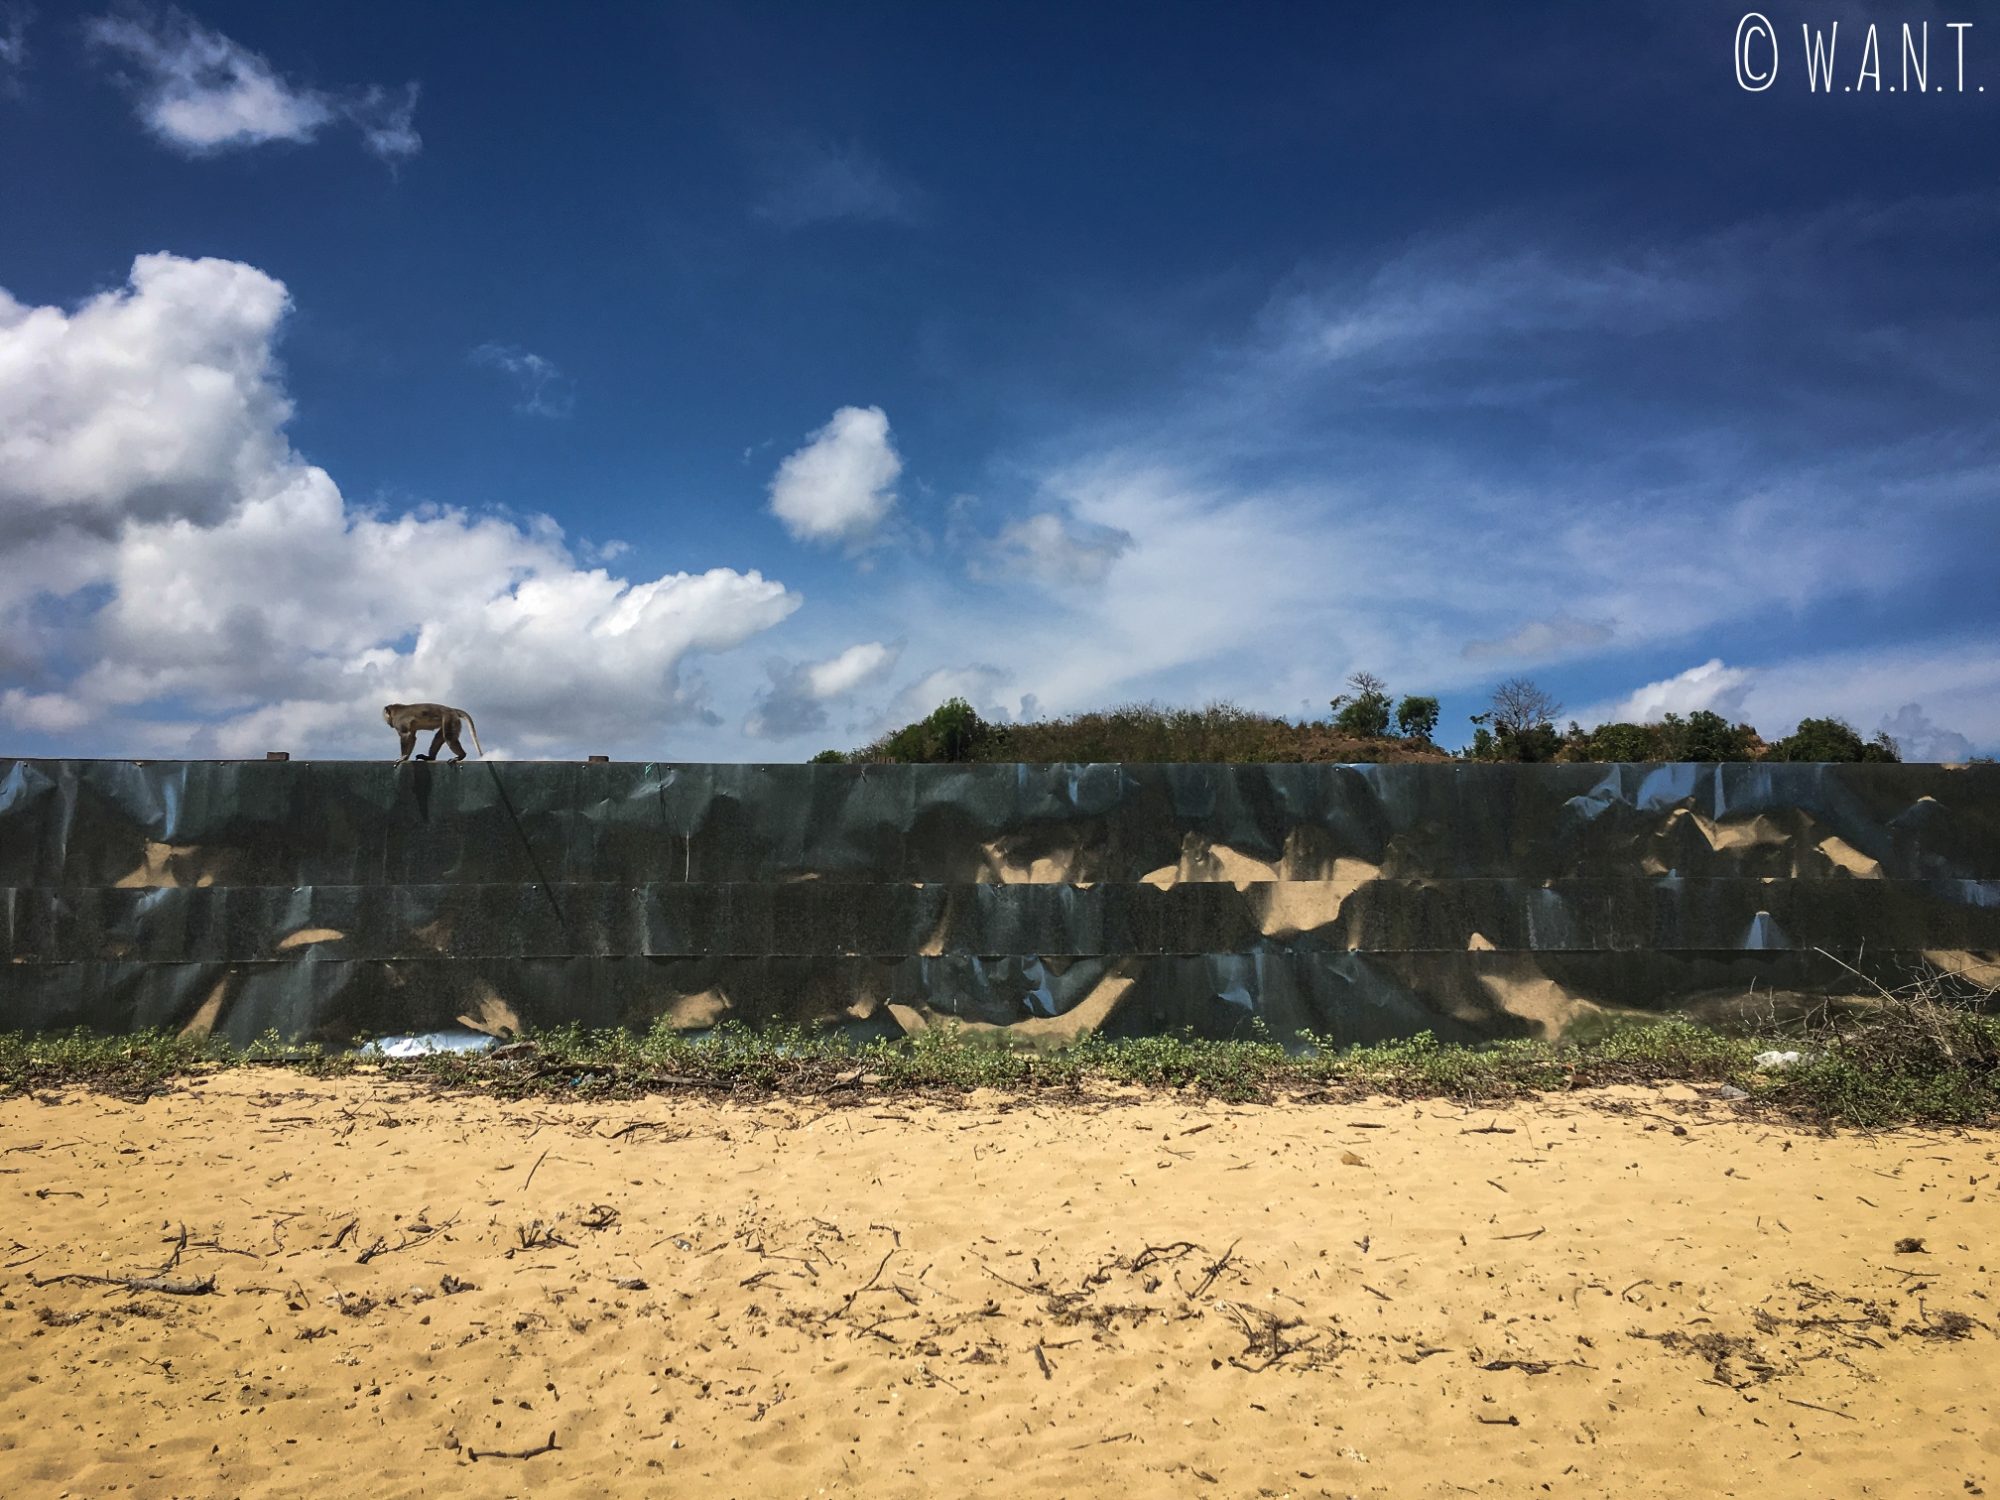 Chantier encerclé par des plaques métalliques sur la plage de Kuta Lombok